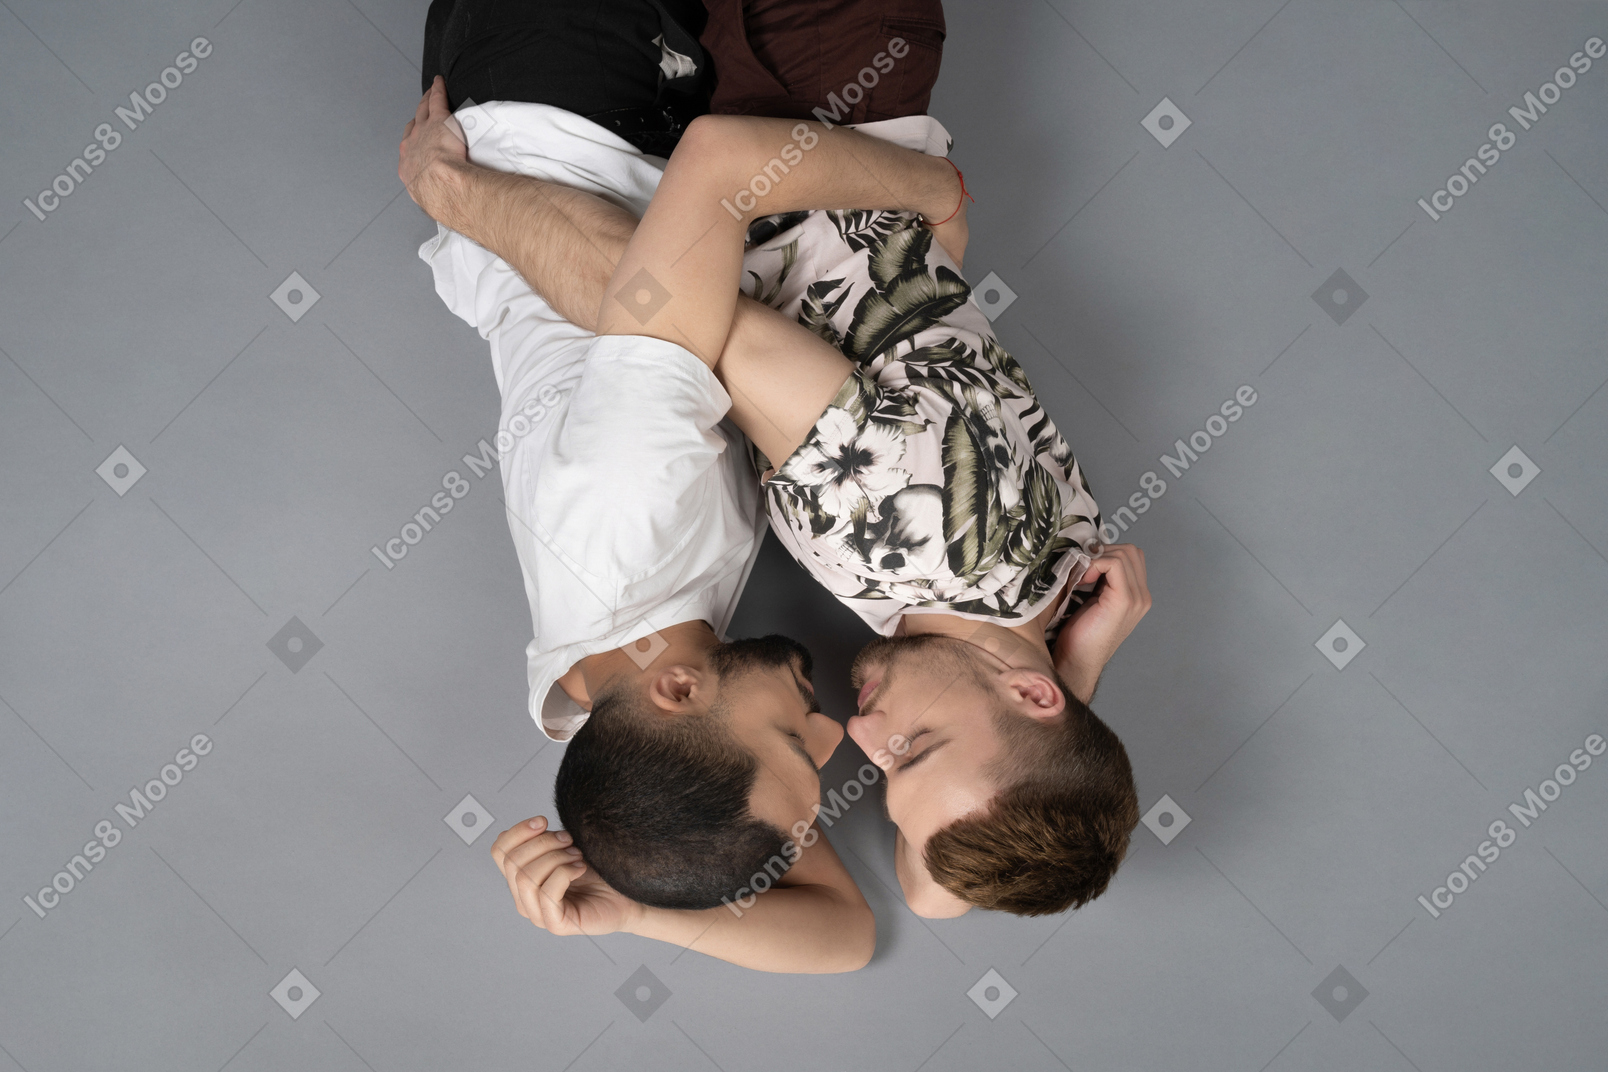 Flache lage von zwei jungen männern, die auf den seiten auf dem boden liegen und sich umarmen